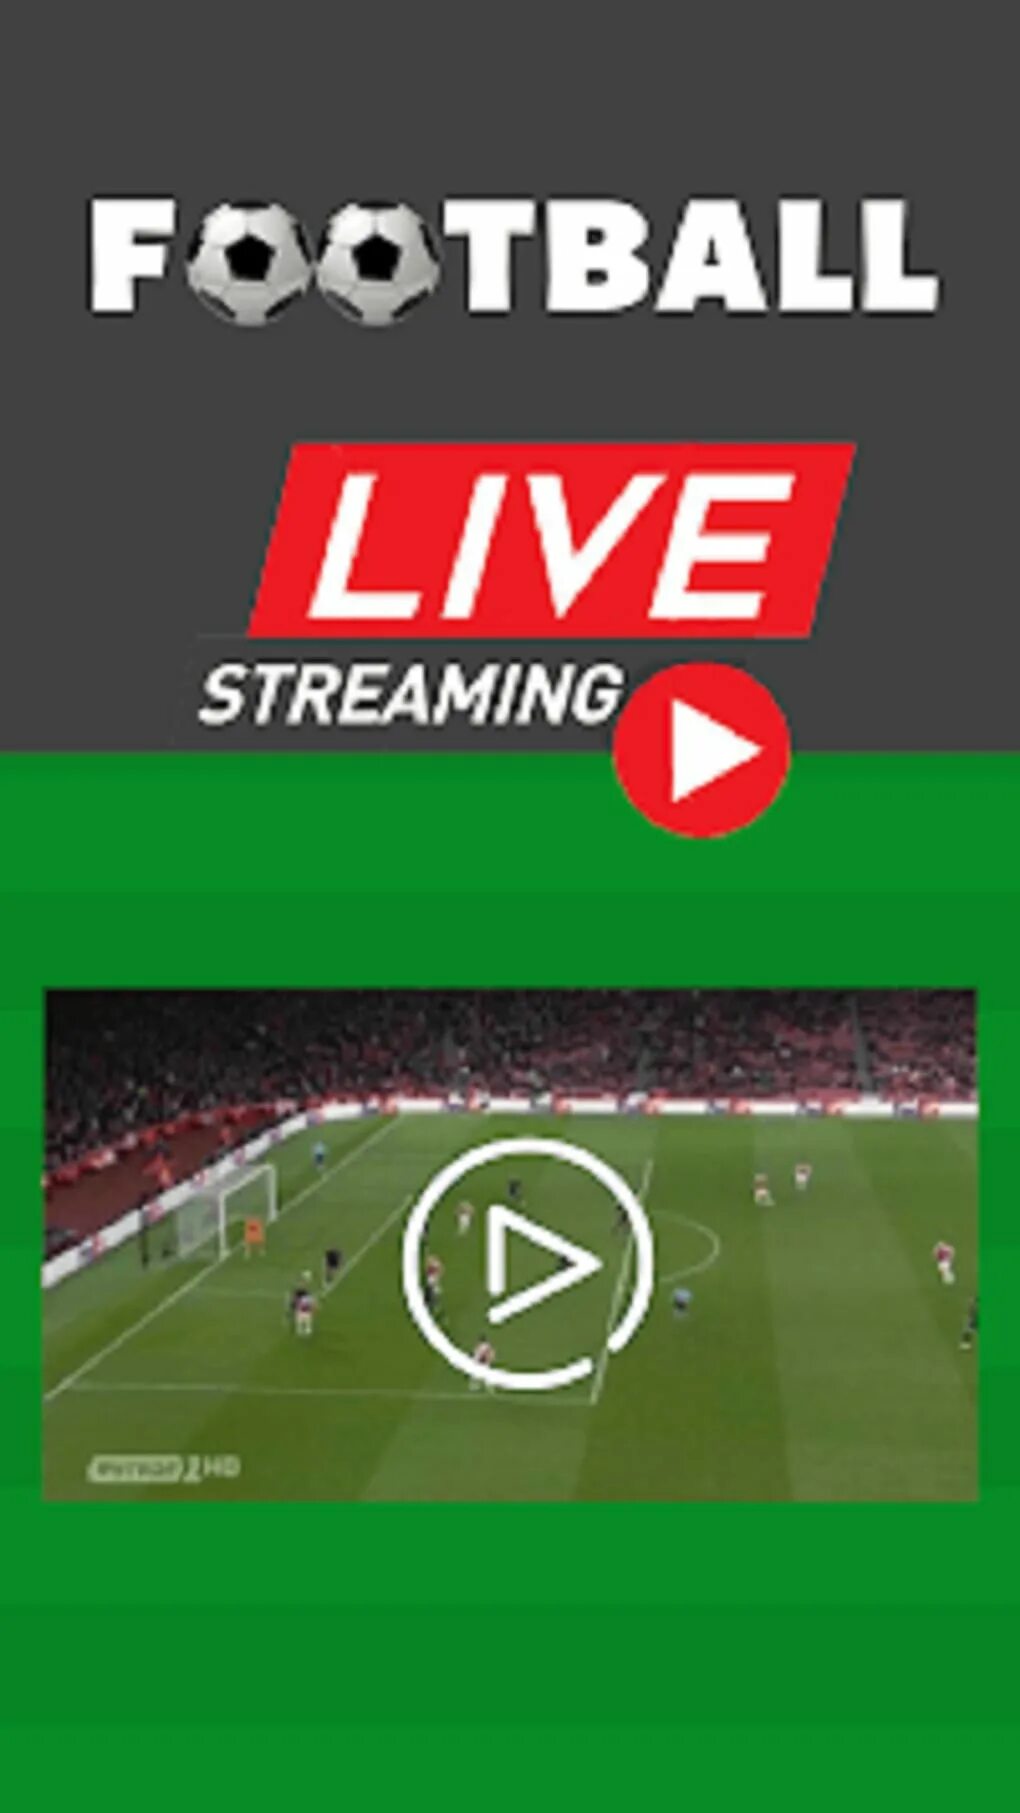 Футбольные трансляции livetv. Live streaming Football. Футбольный стрим. Live Football TV.